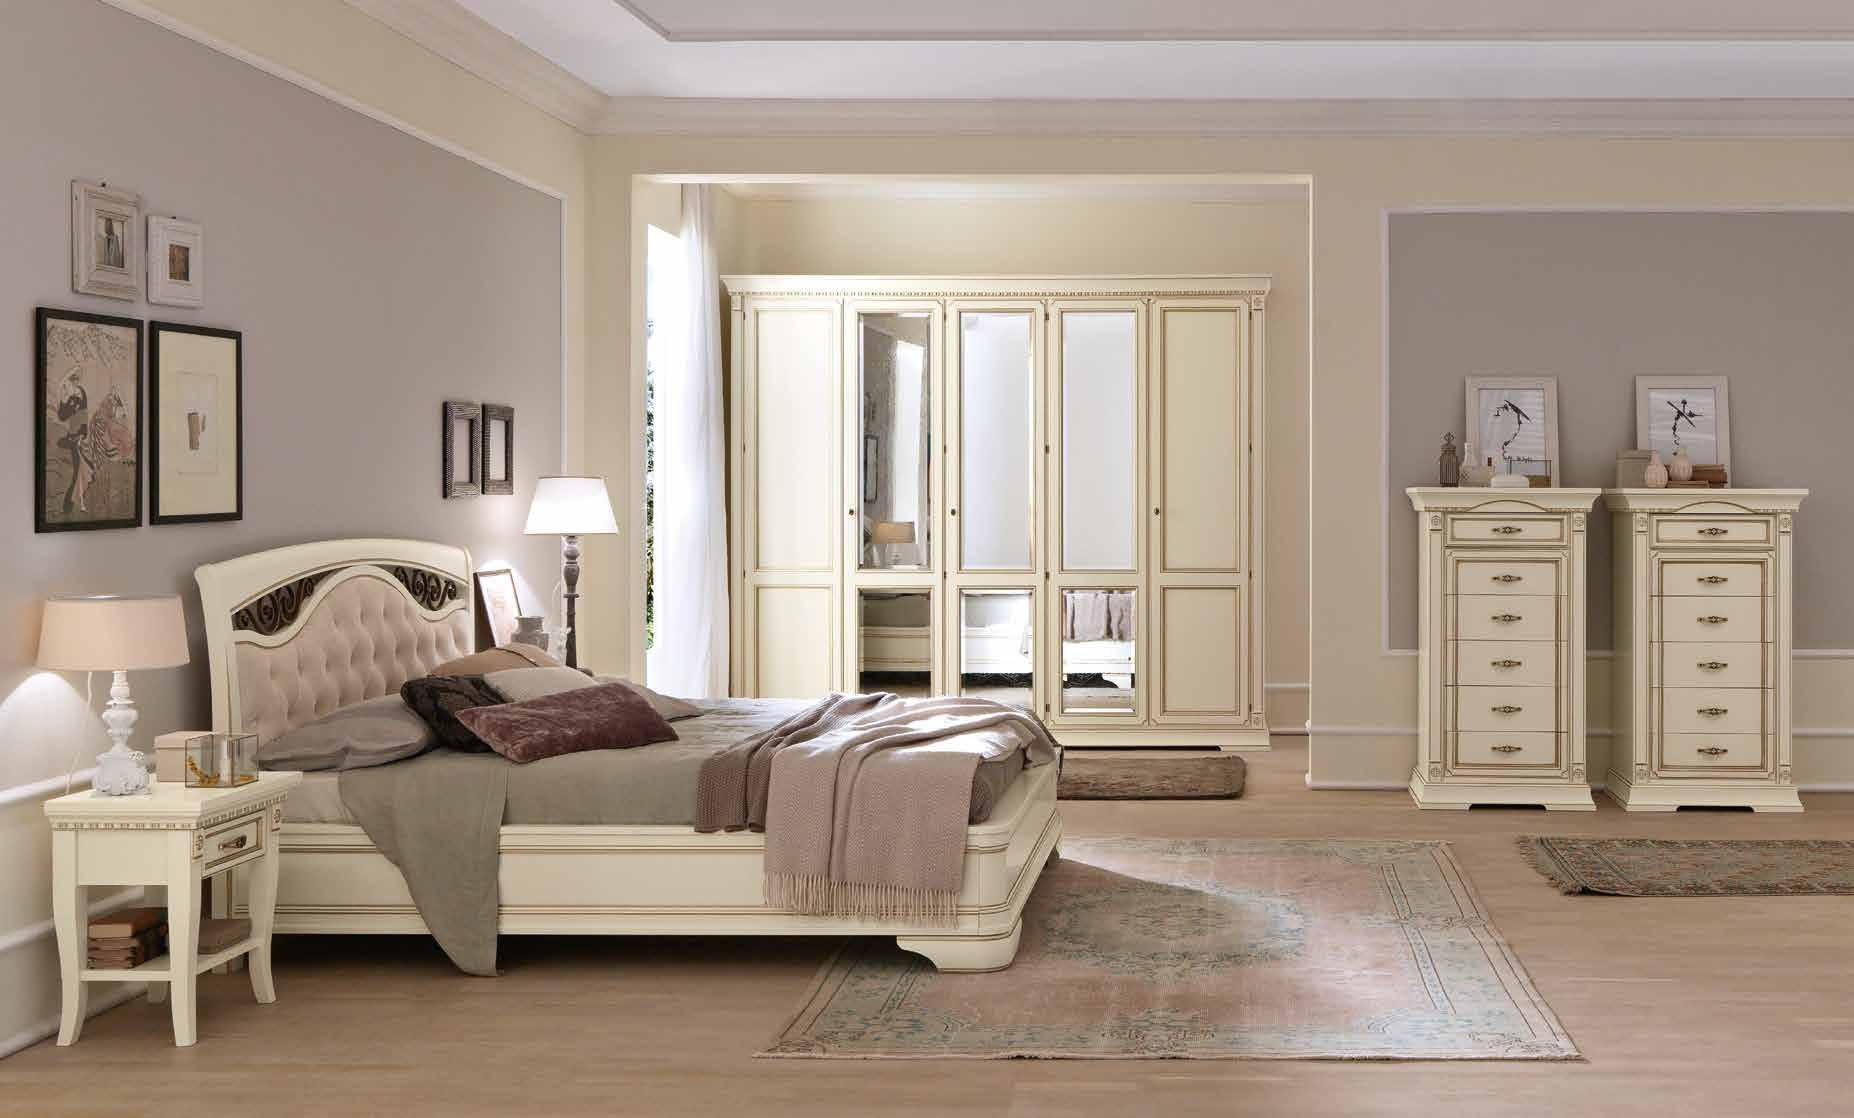 Кровать Prama Palazzo Ducale laccato, двуспальная, с мягким изголовьем, с ковкой, без изножья, цвет: белый с золотом, 160x200 см (71BO74LT)71BO74LT